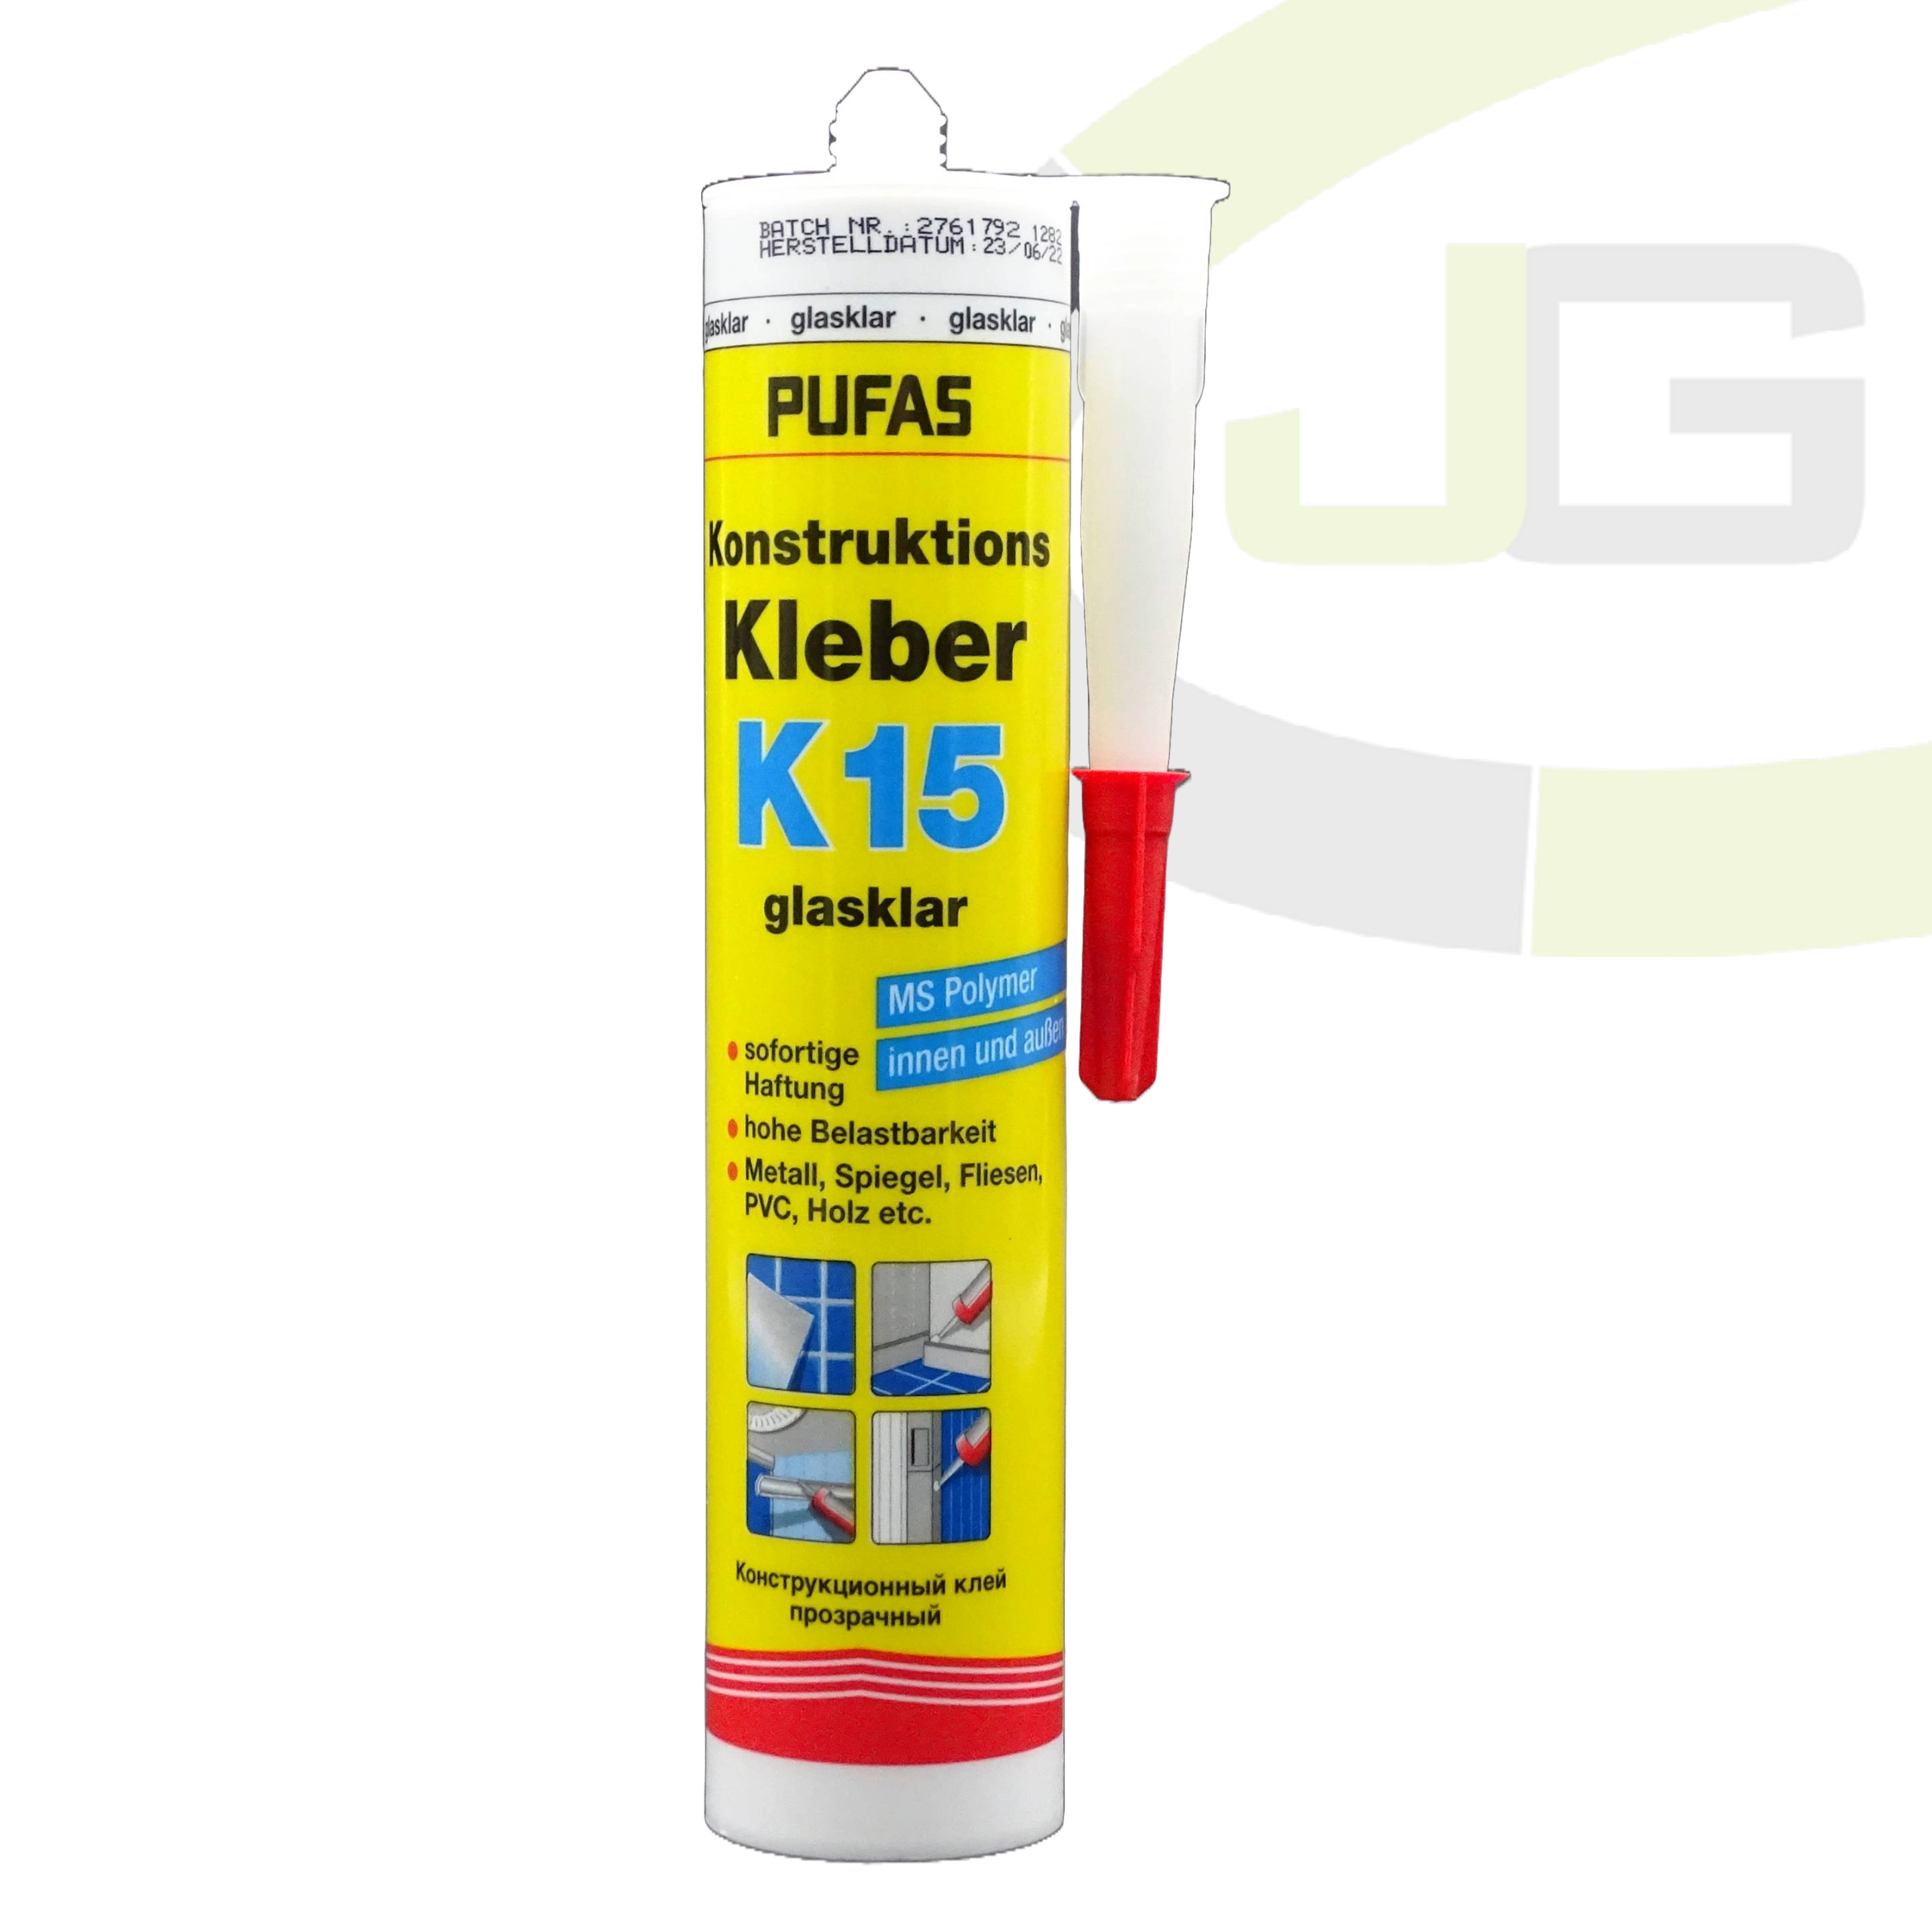 Pufas Konstrucktionskleber K15 / Allround Kleber für alle Oberflächen